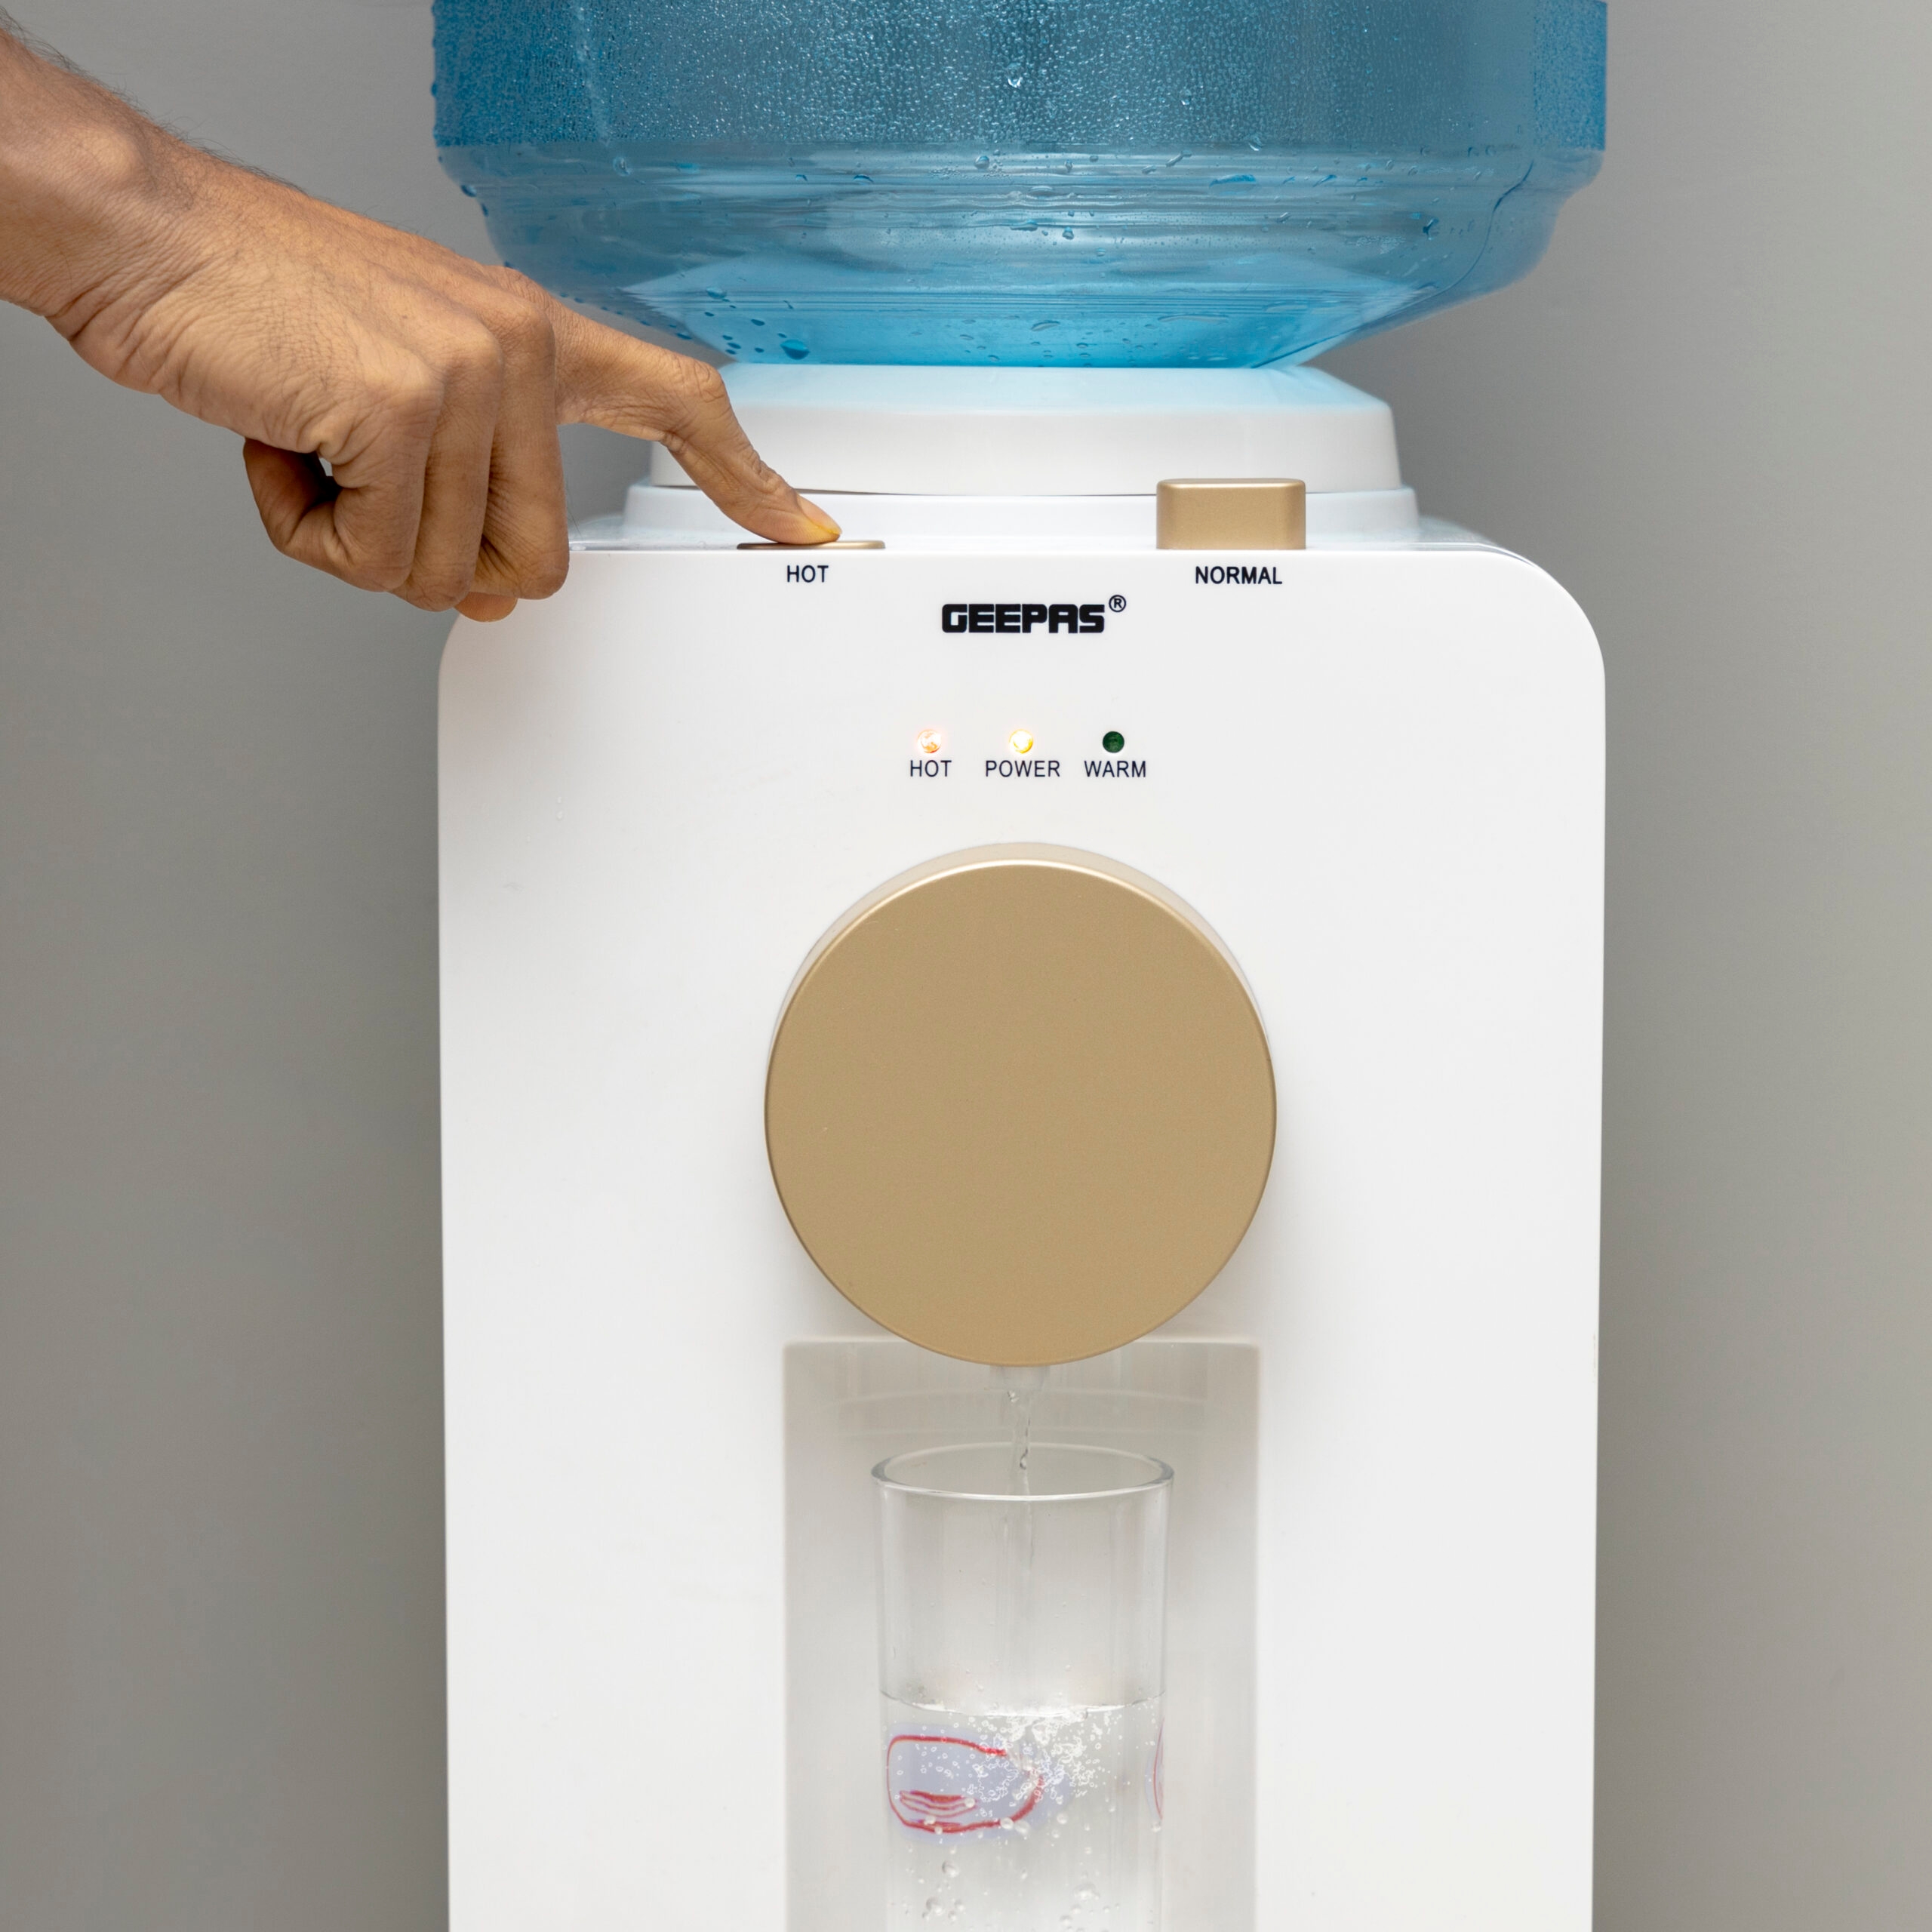 سخان ماء كهربائي بقوة 500 واط Geepas Hot And Normal Water Dispenser - Geepas - 3}